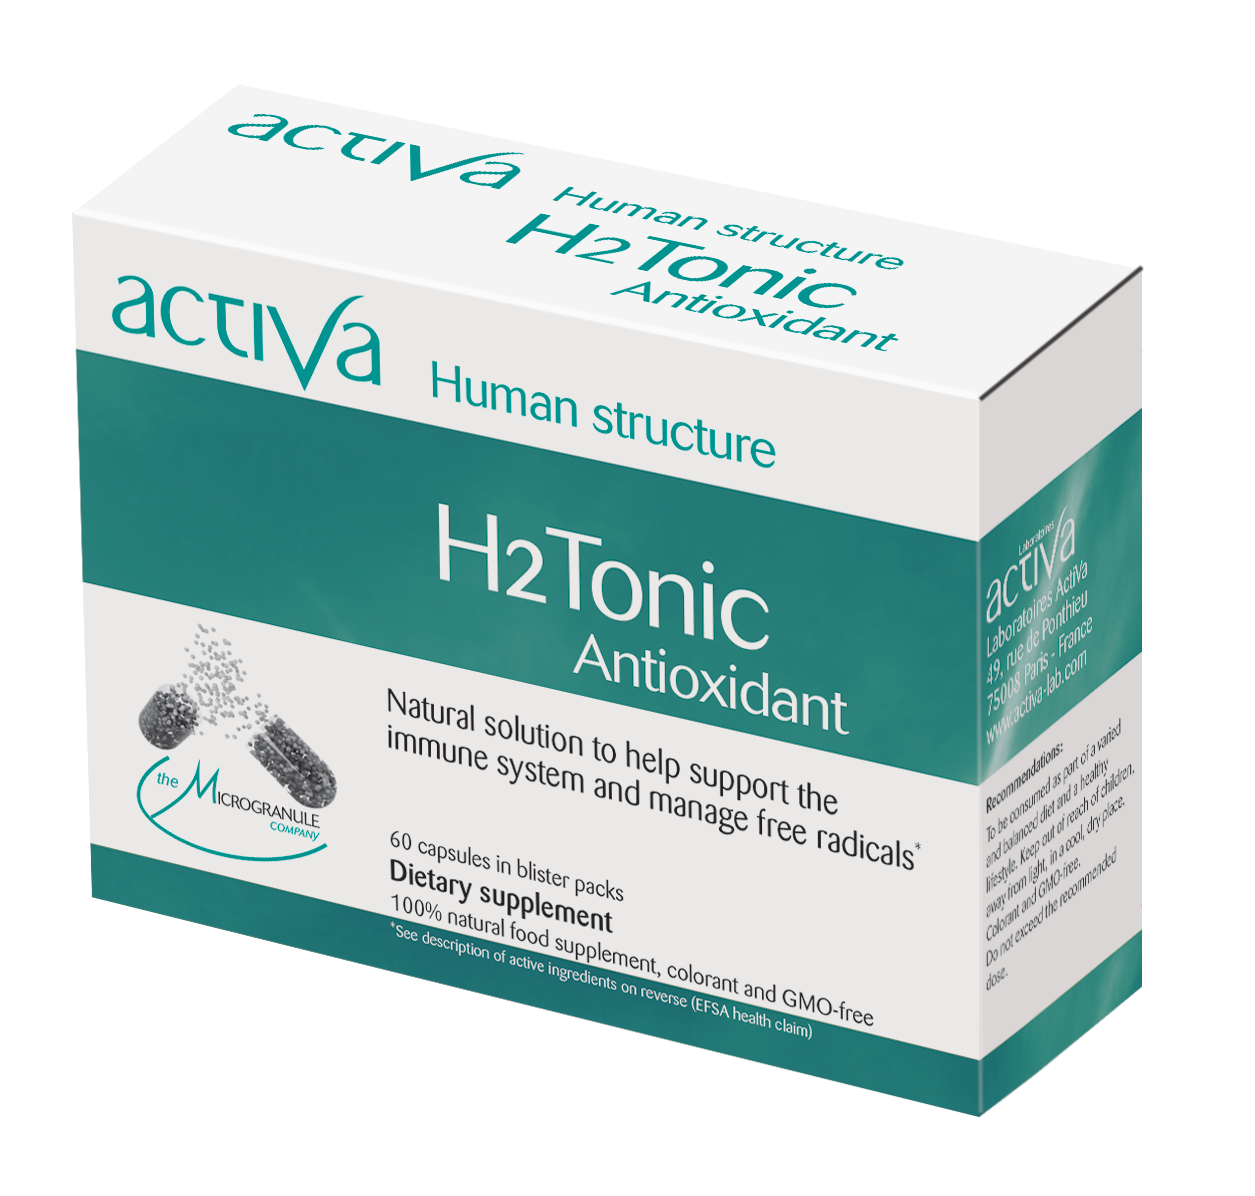 H2 Tonic